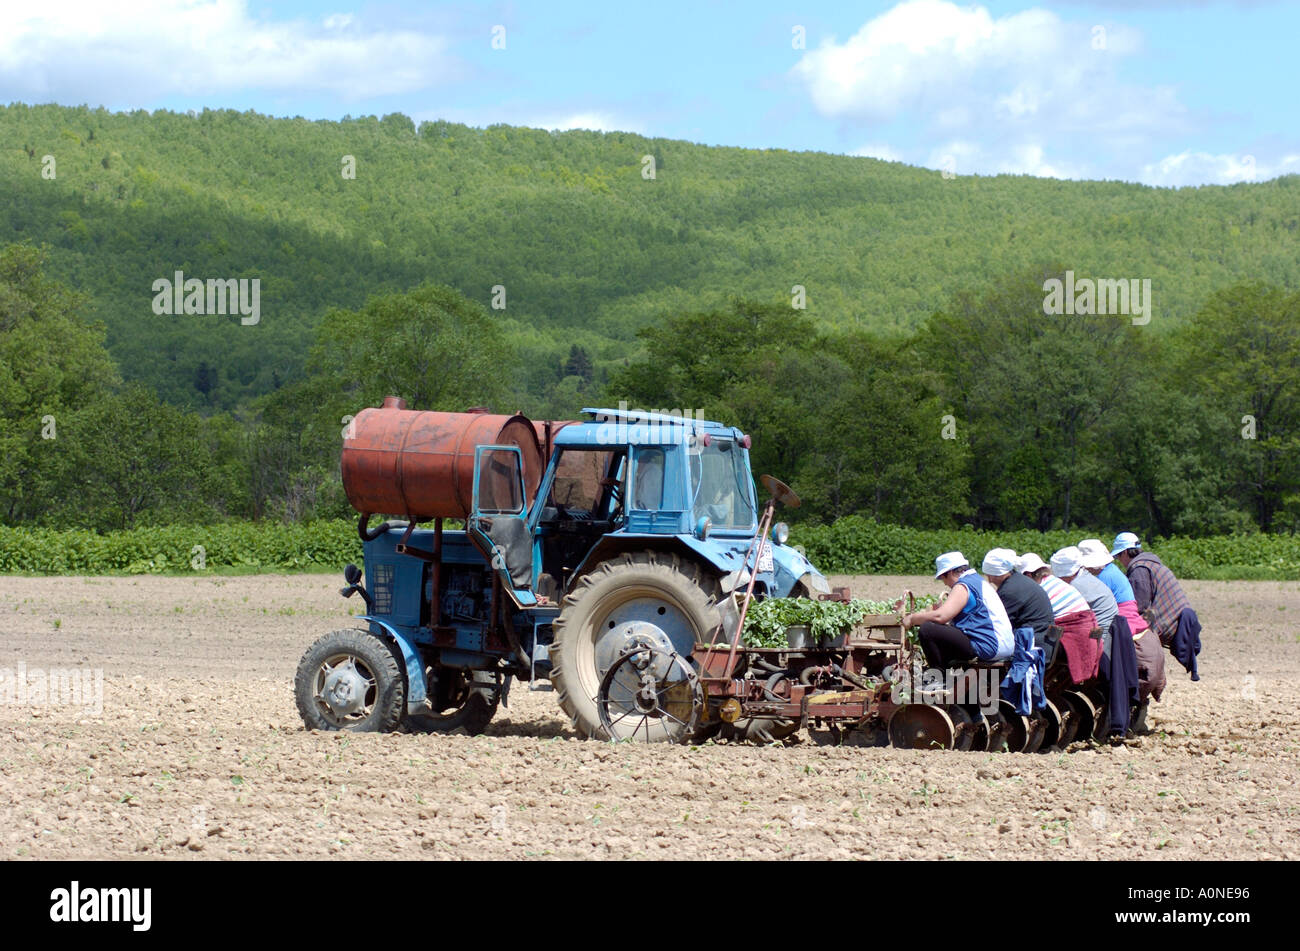 La plantation de choux pendant le court été près de Yuzhno Sakhalinsk sur l'île de Sakhaline en Russie 2004 Banque D'Images